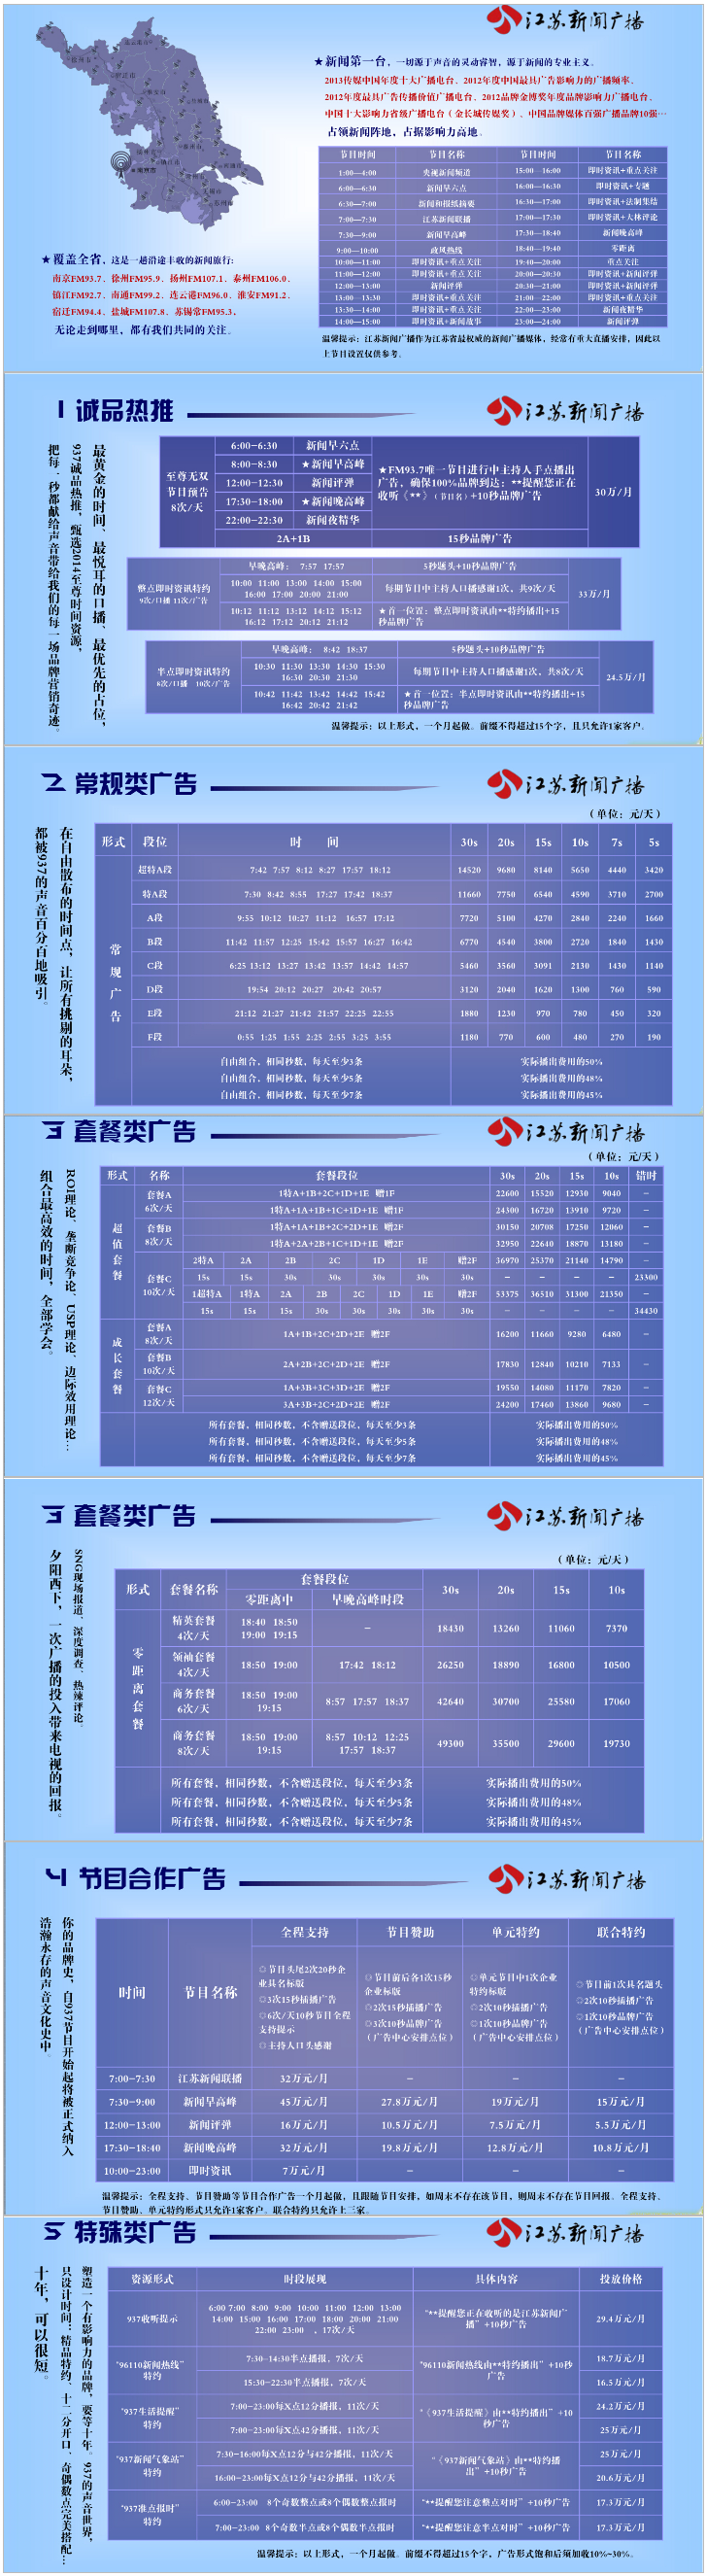 2014江苏人民广播电台新闻广播FM93.7广告报价表.png